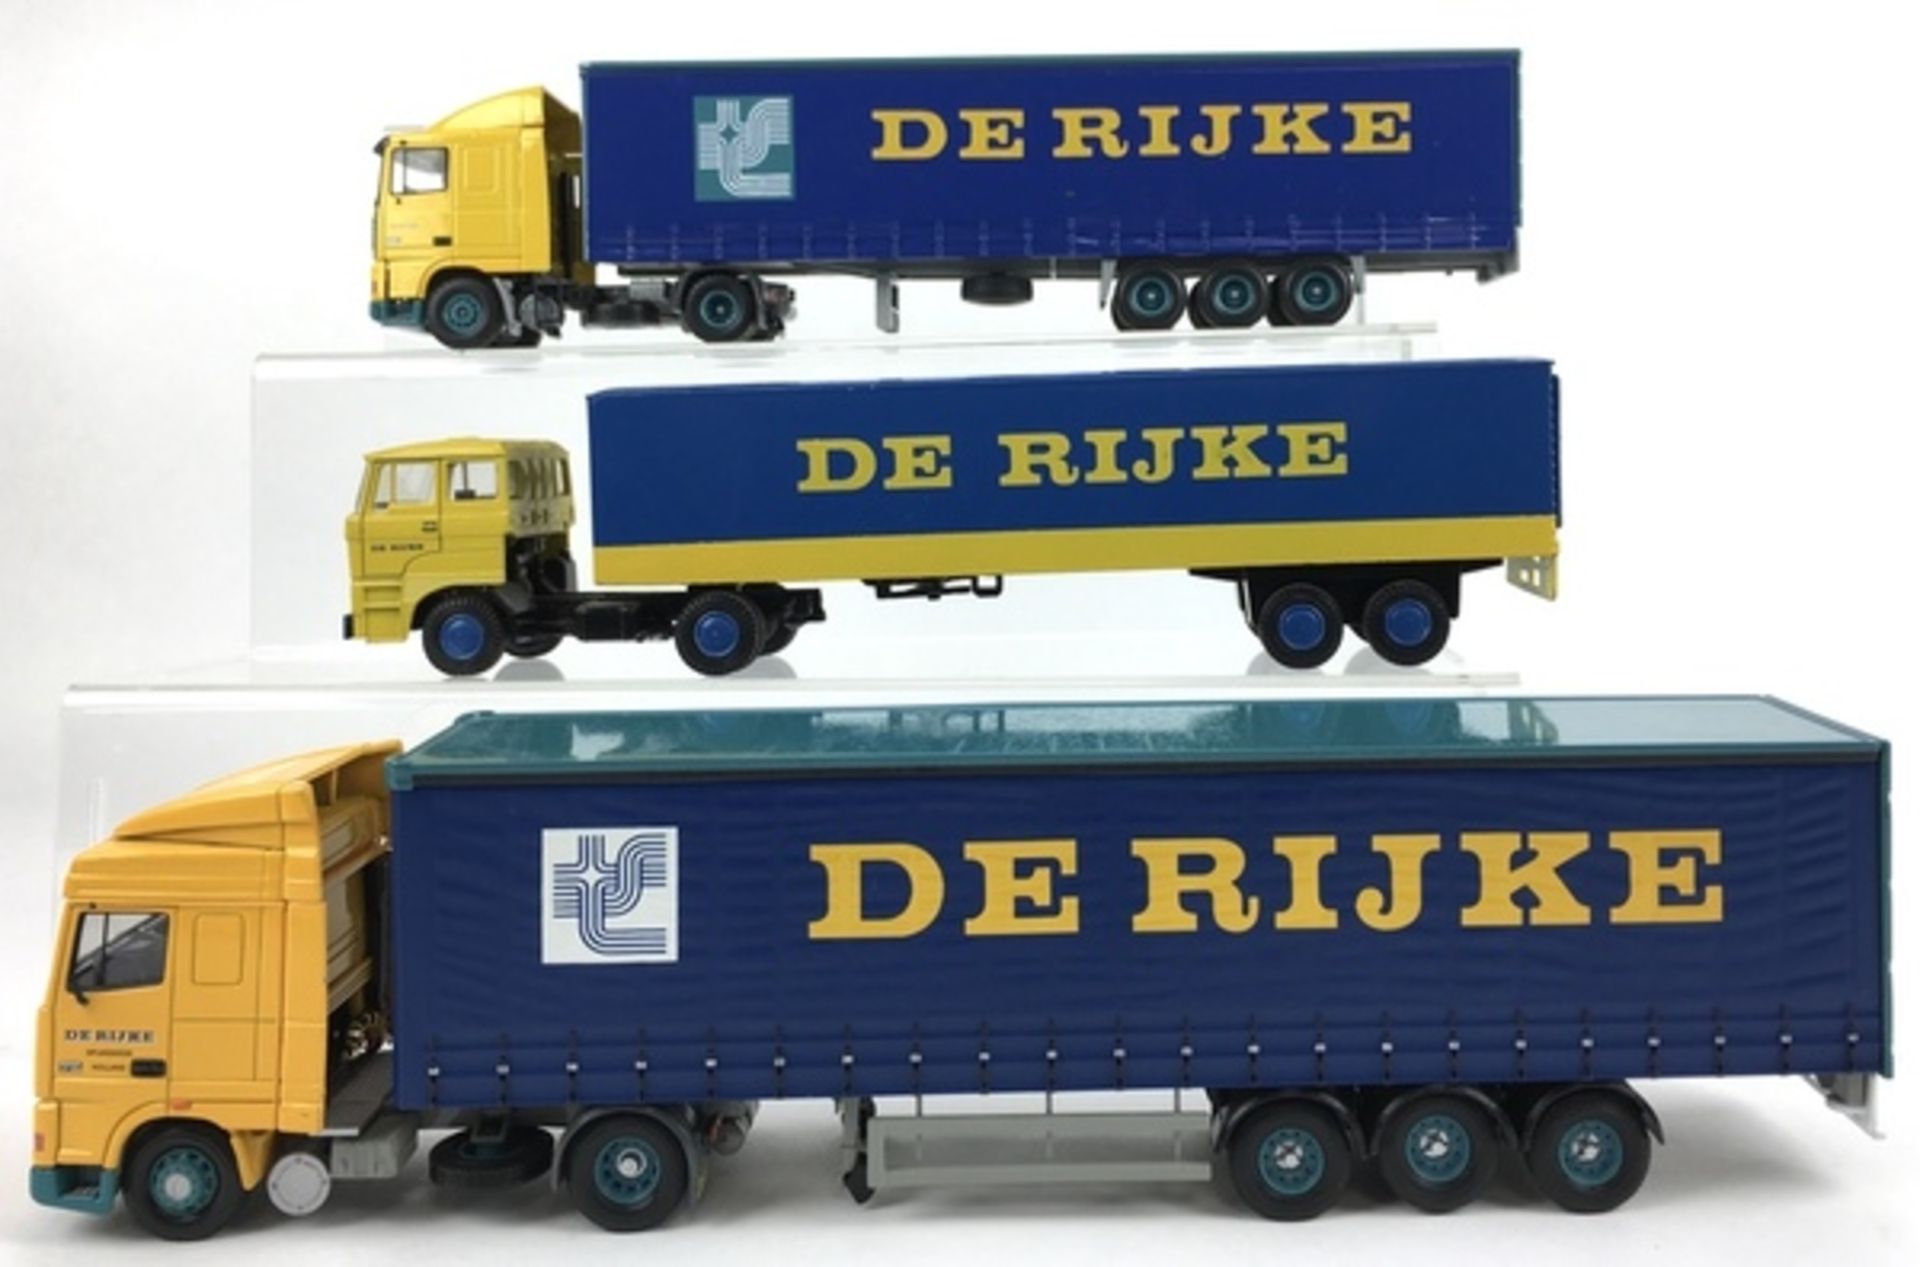 (Speelgoed) VrachtwagensDrie vrachtwagens met bedrijfslogo De Rijke. Conditie: In goede staat.